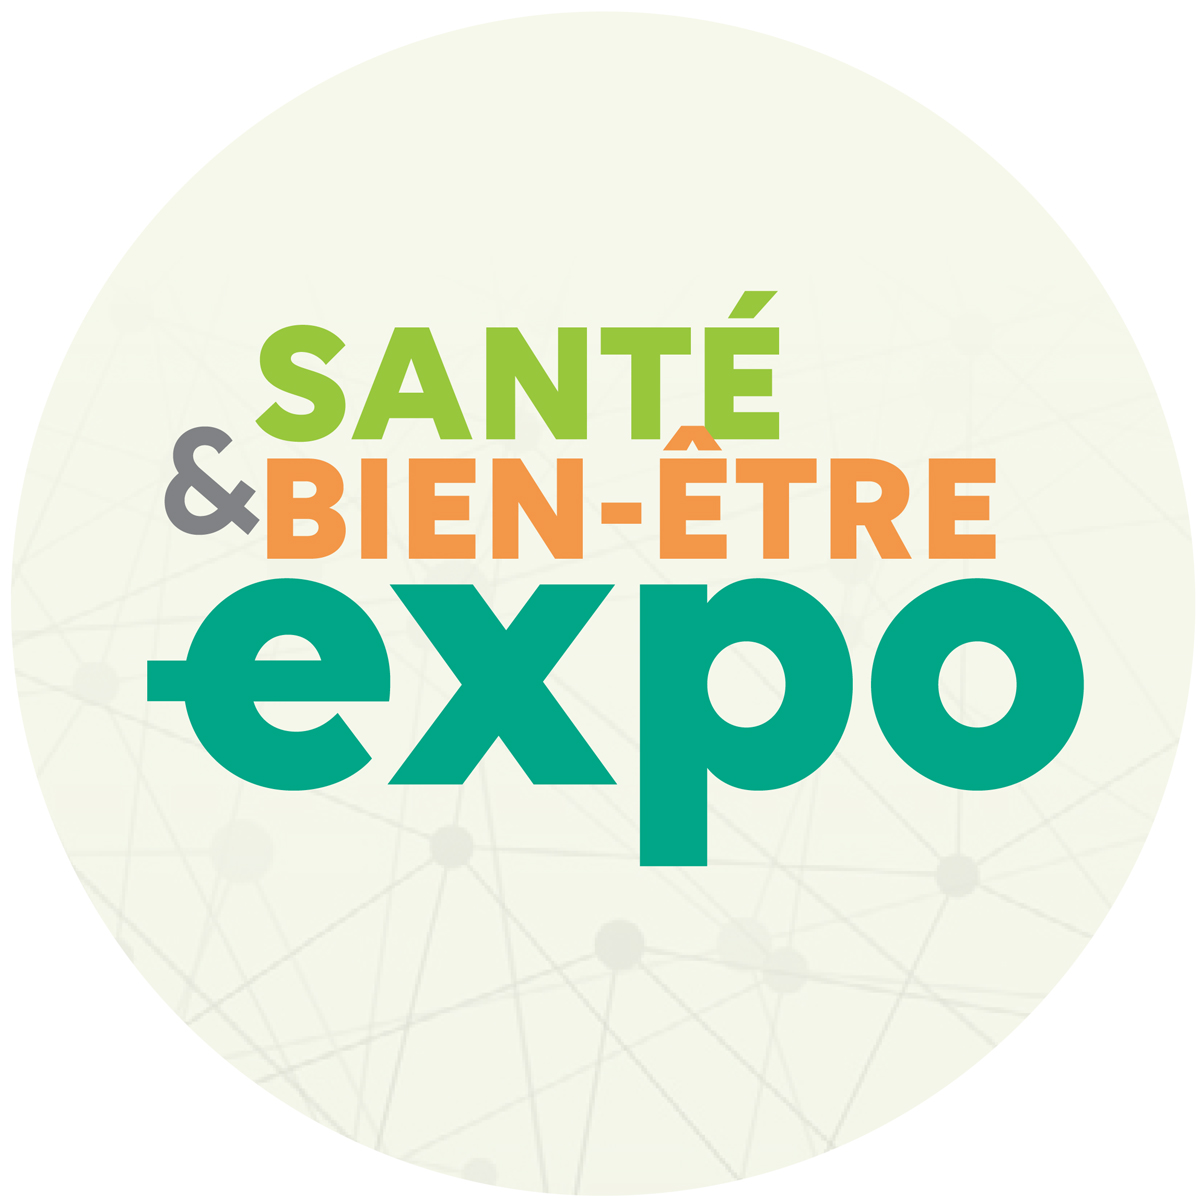 SANTE & BIEN-ETRE EXPO